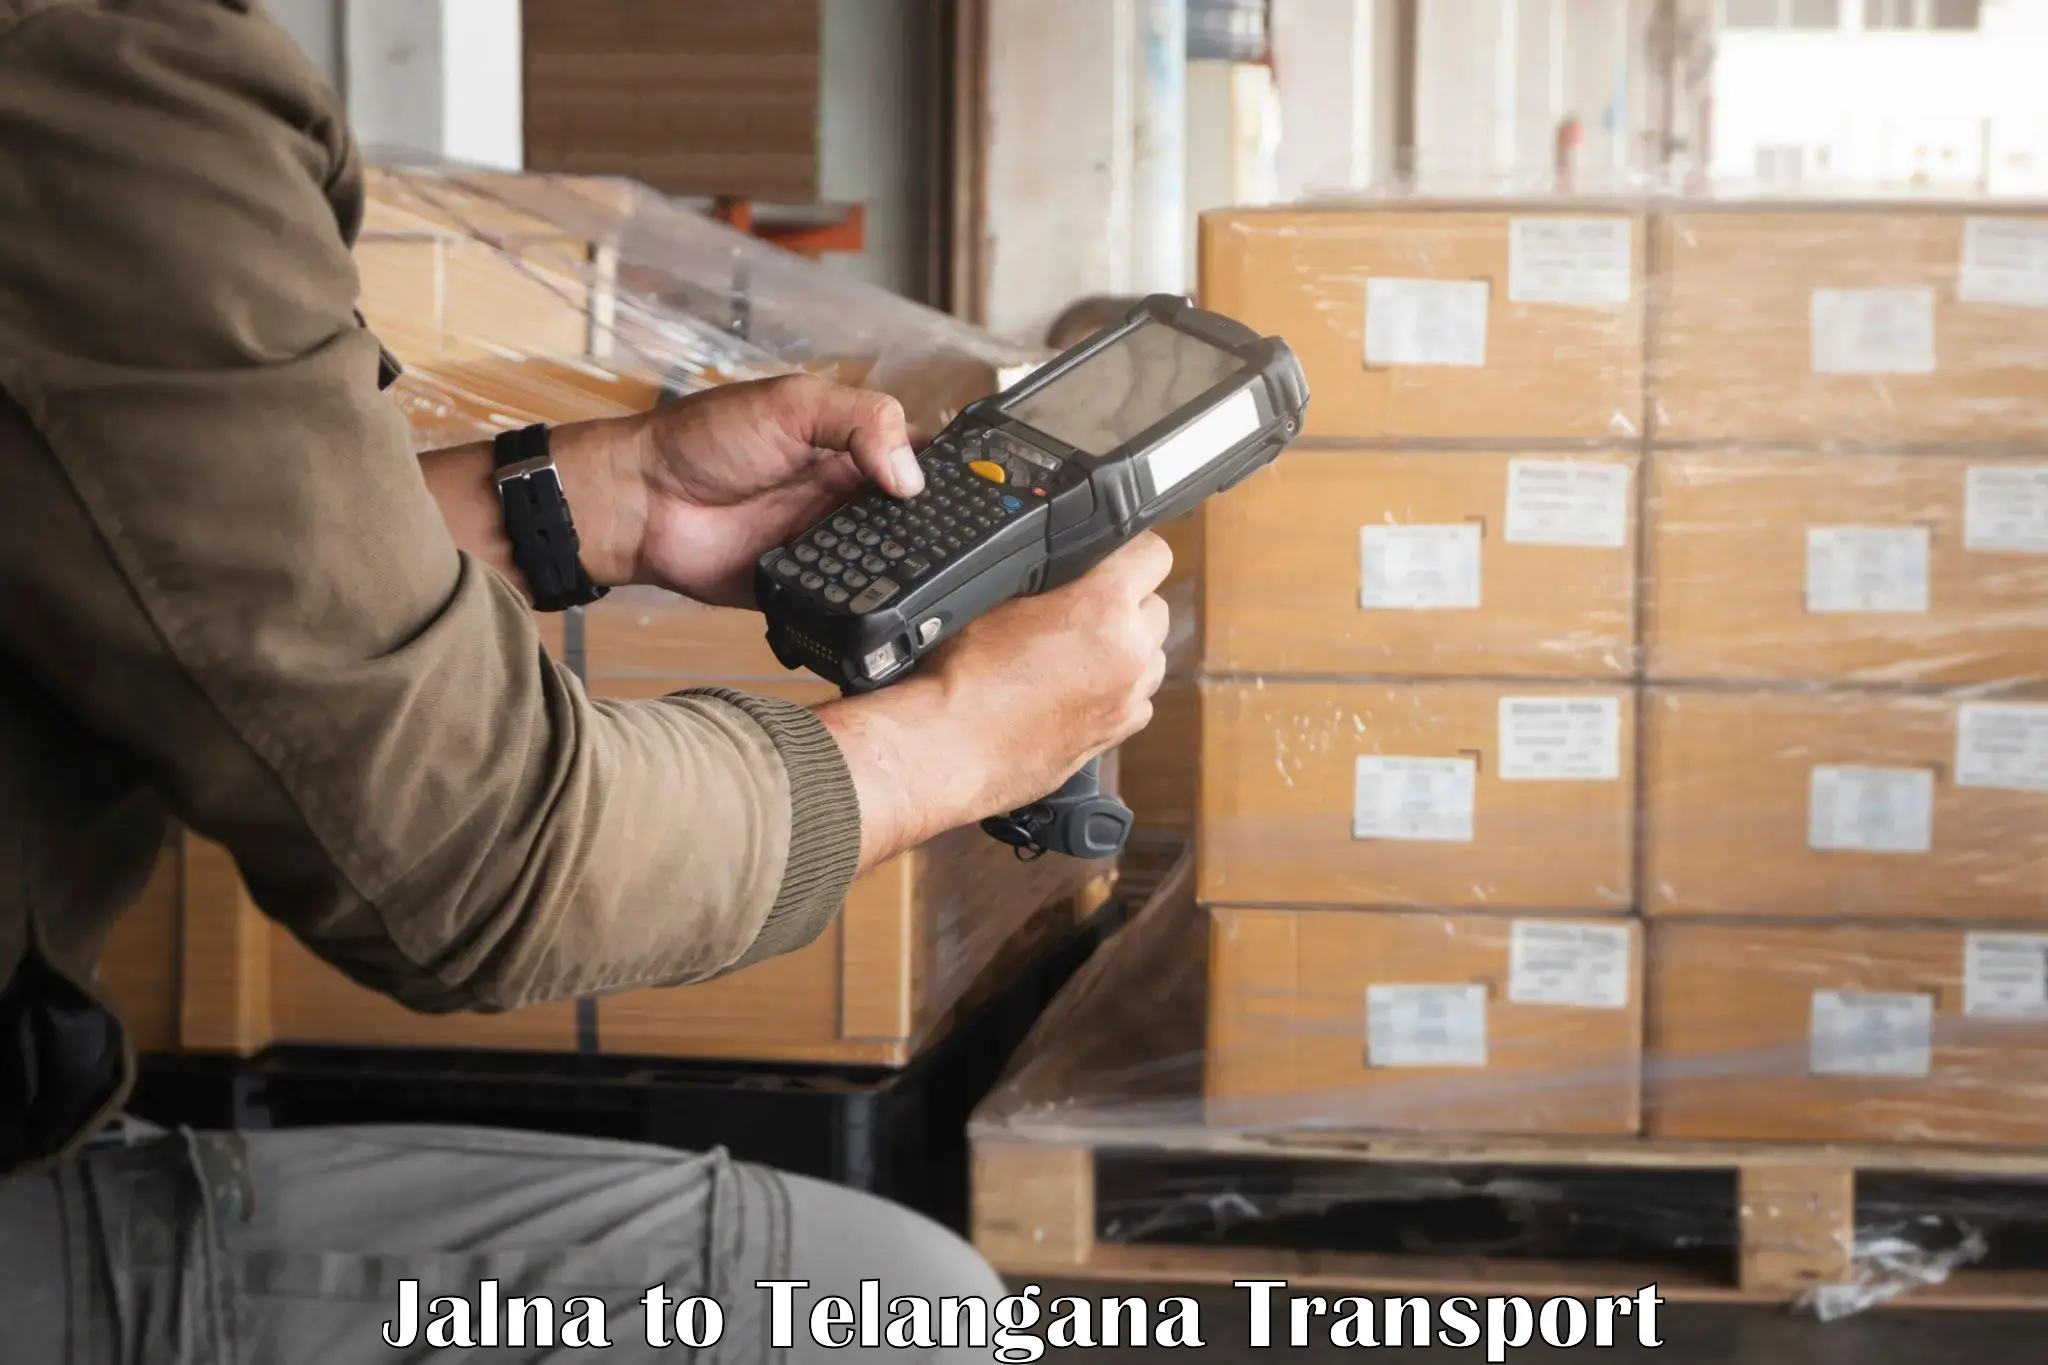 Container transport service Jalna to Thirumalagiri